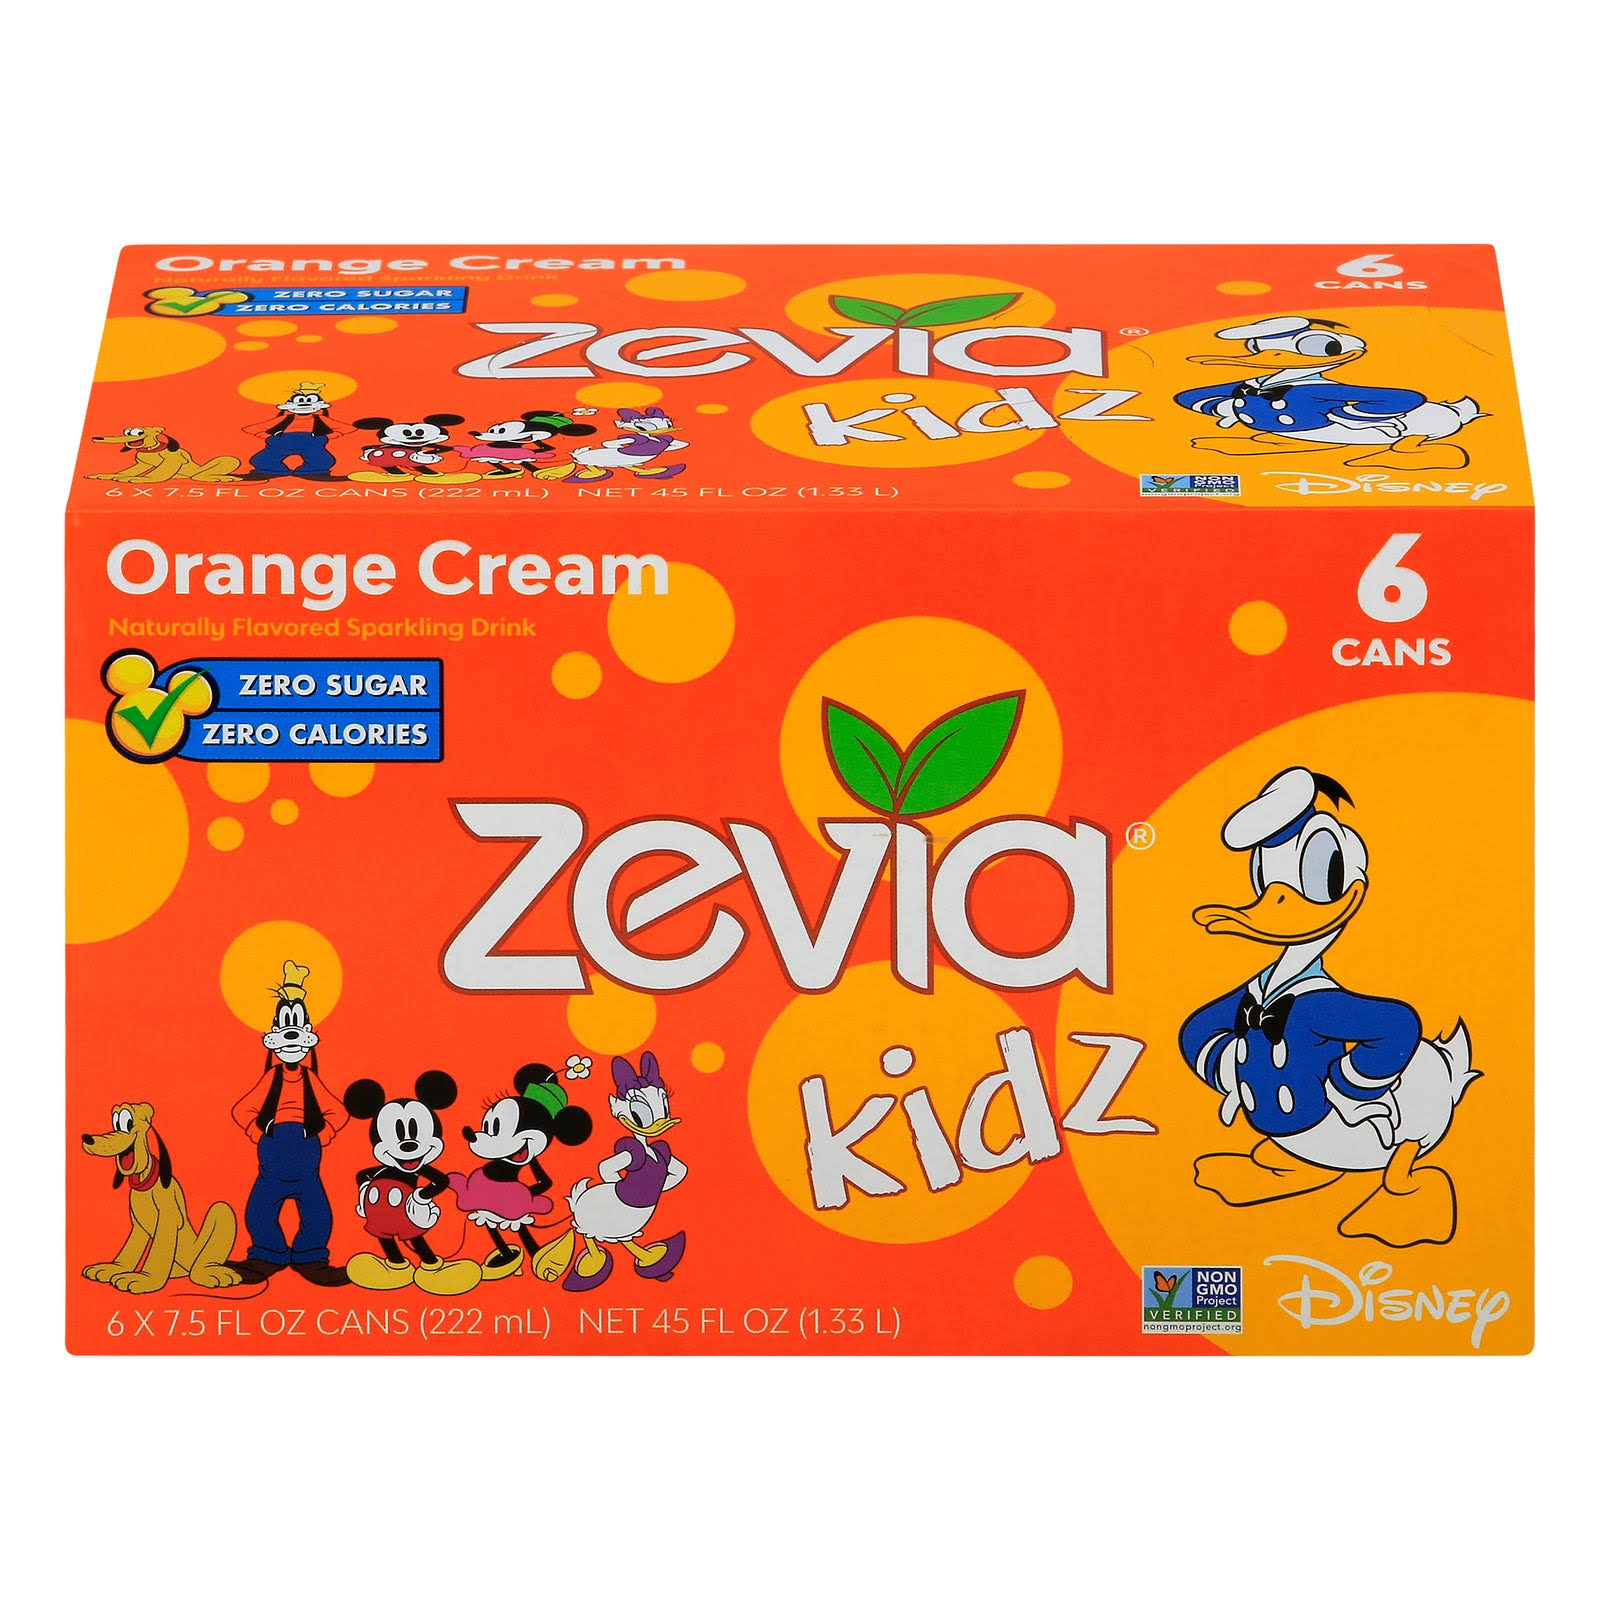 Zevia Kidz Sparkling Drink, Orange Cream - 6 pack, 7.5 fl oz cans